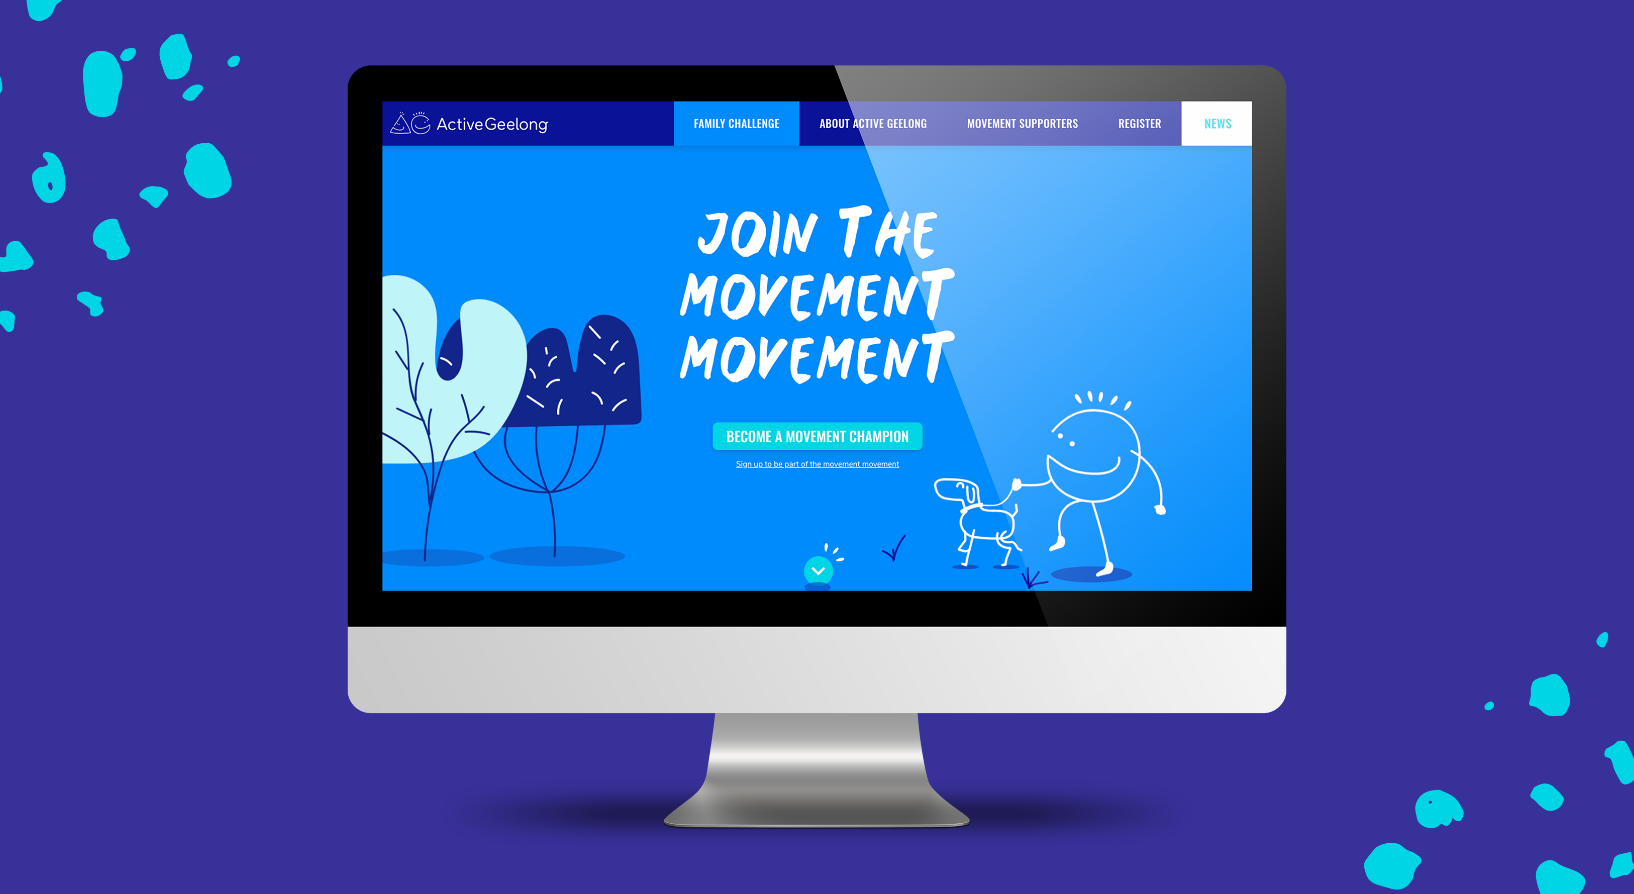 Active Geelong website homepage shown on desktop computer